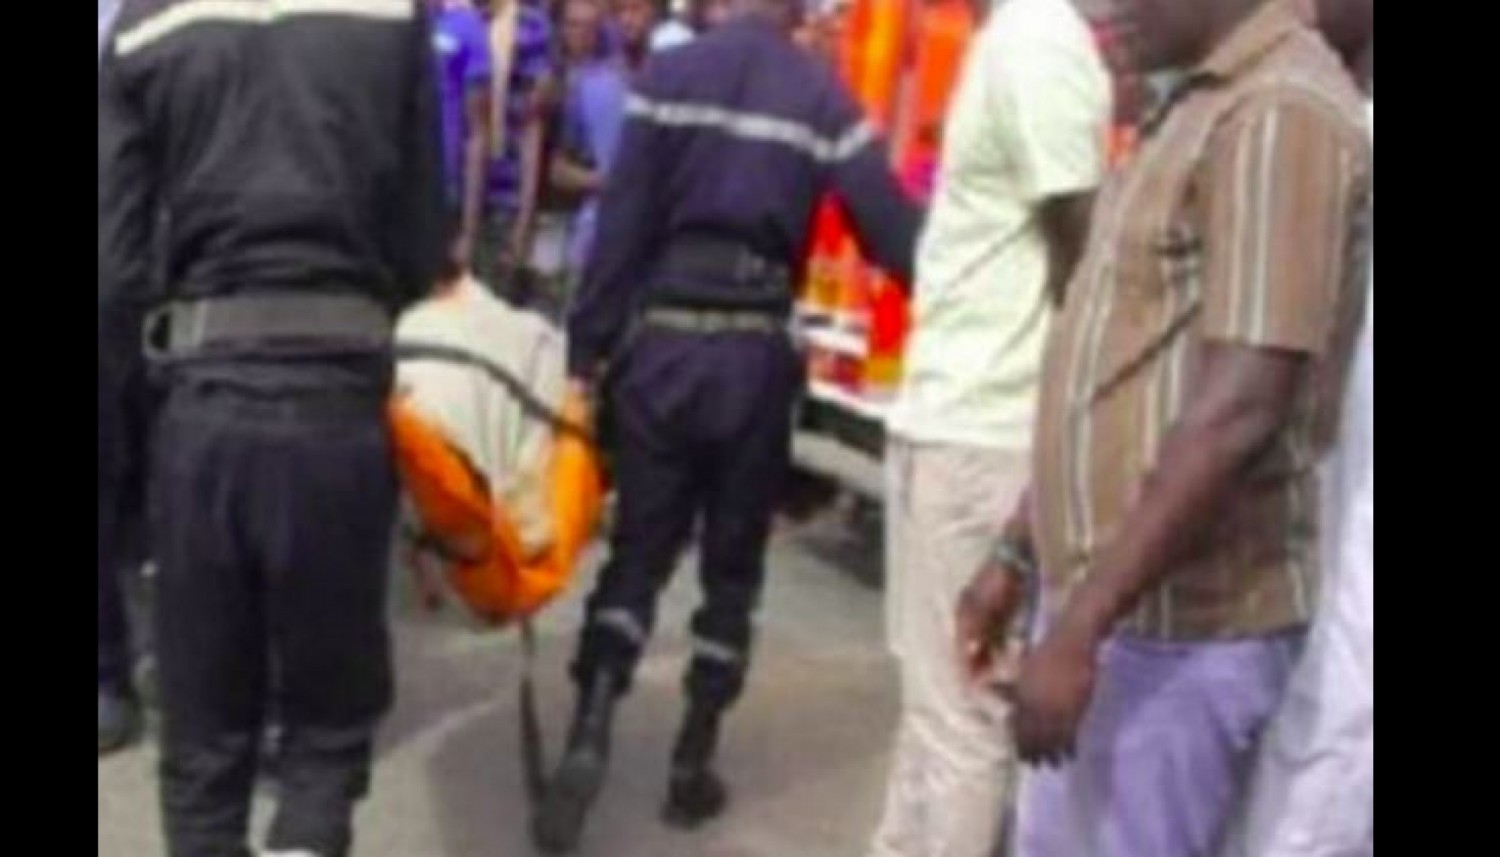 Côte d'Ivoire : Niakara, il taillade à mort son meilleur ami pour lui soutirer la somme de 500.000 FCFA dans le but de s'acheter une moto